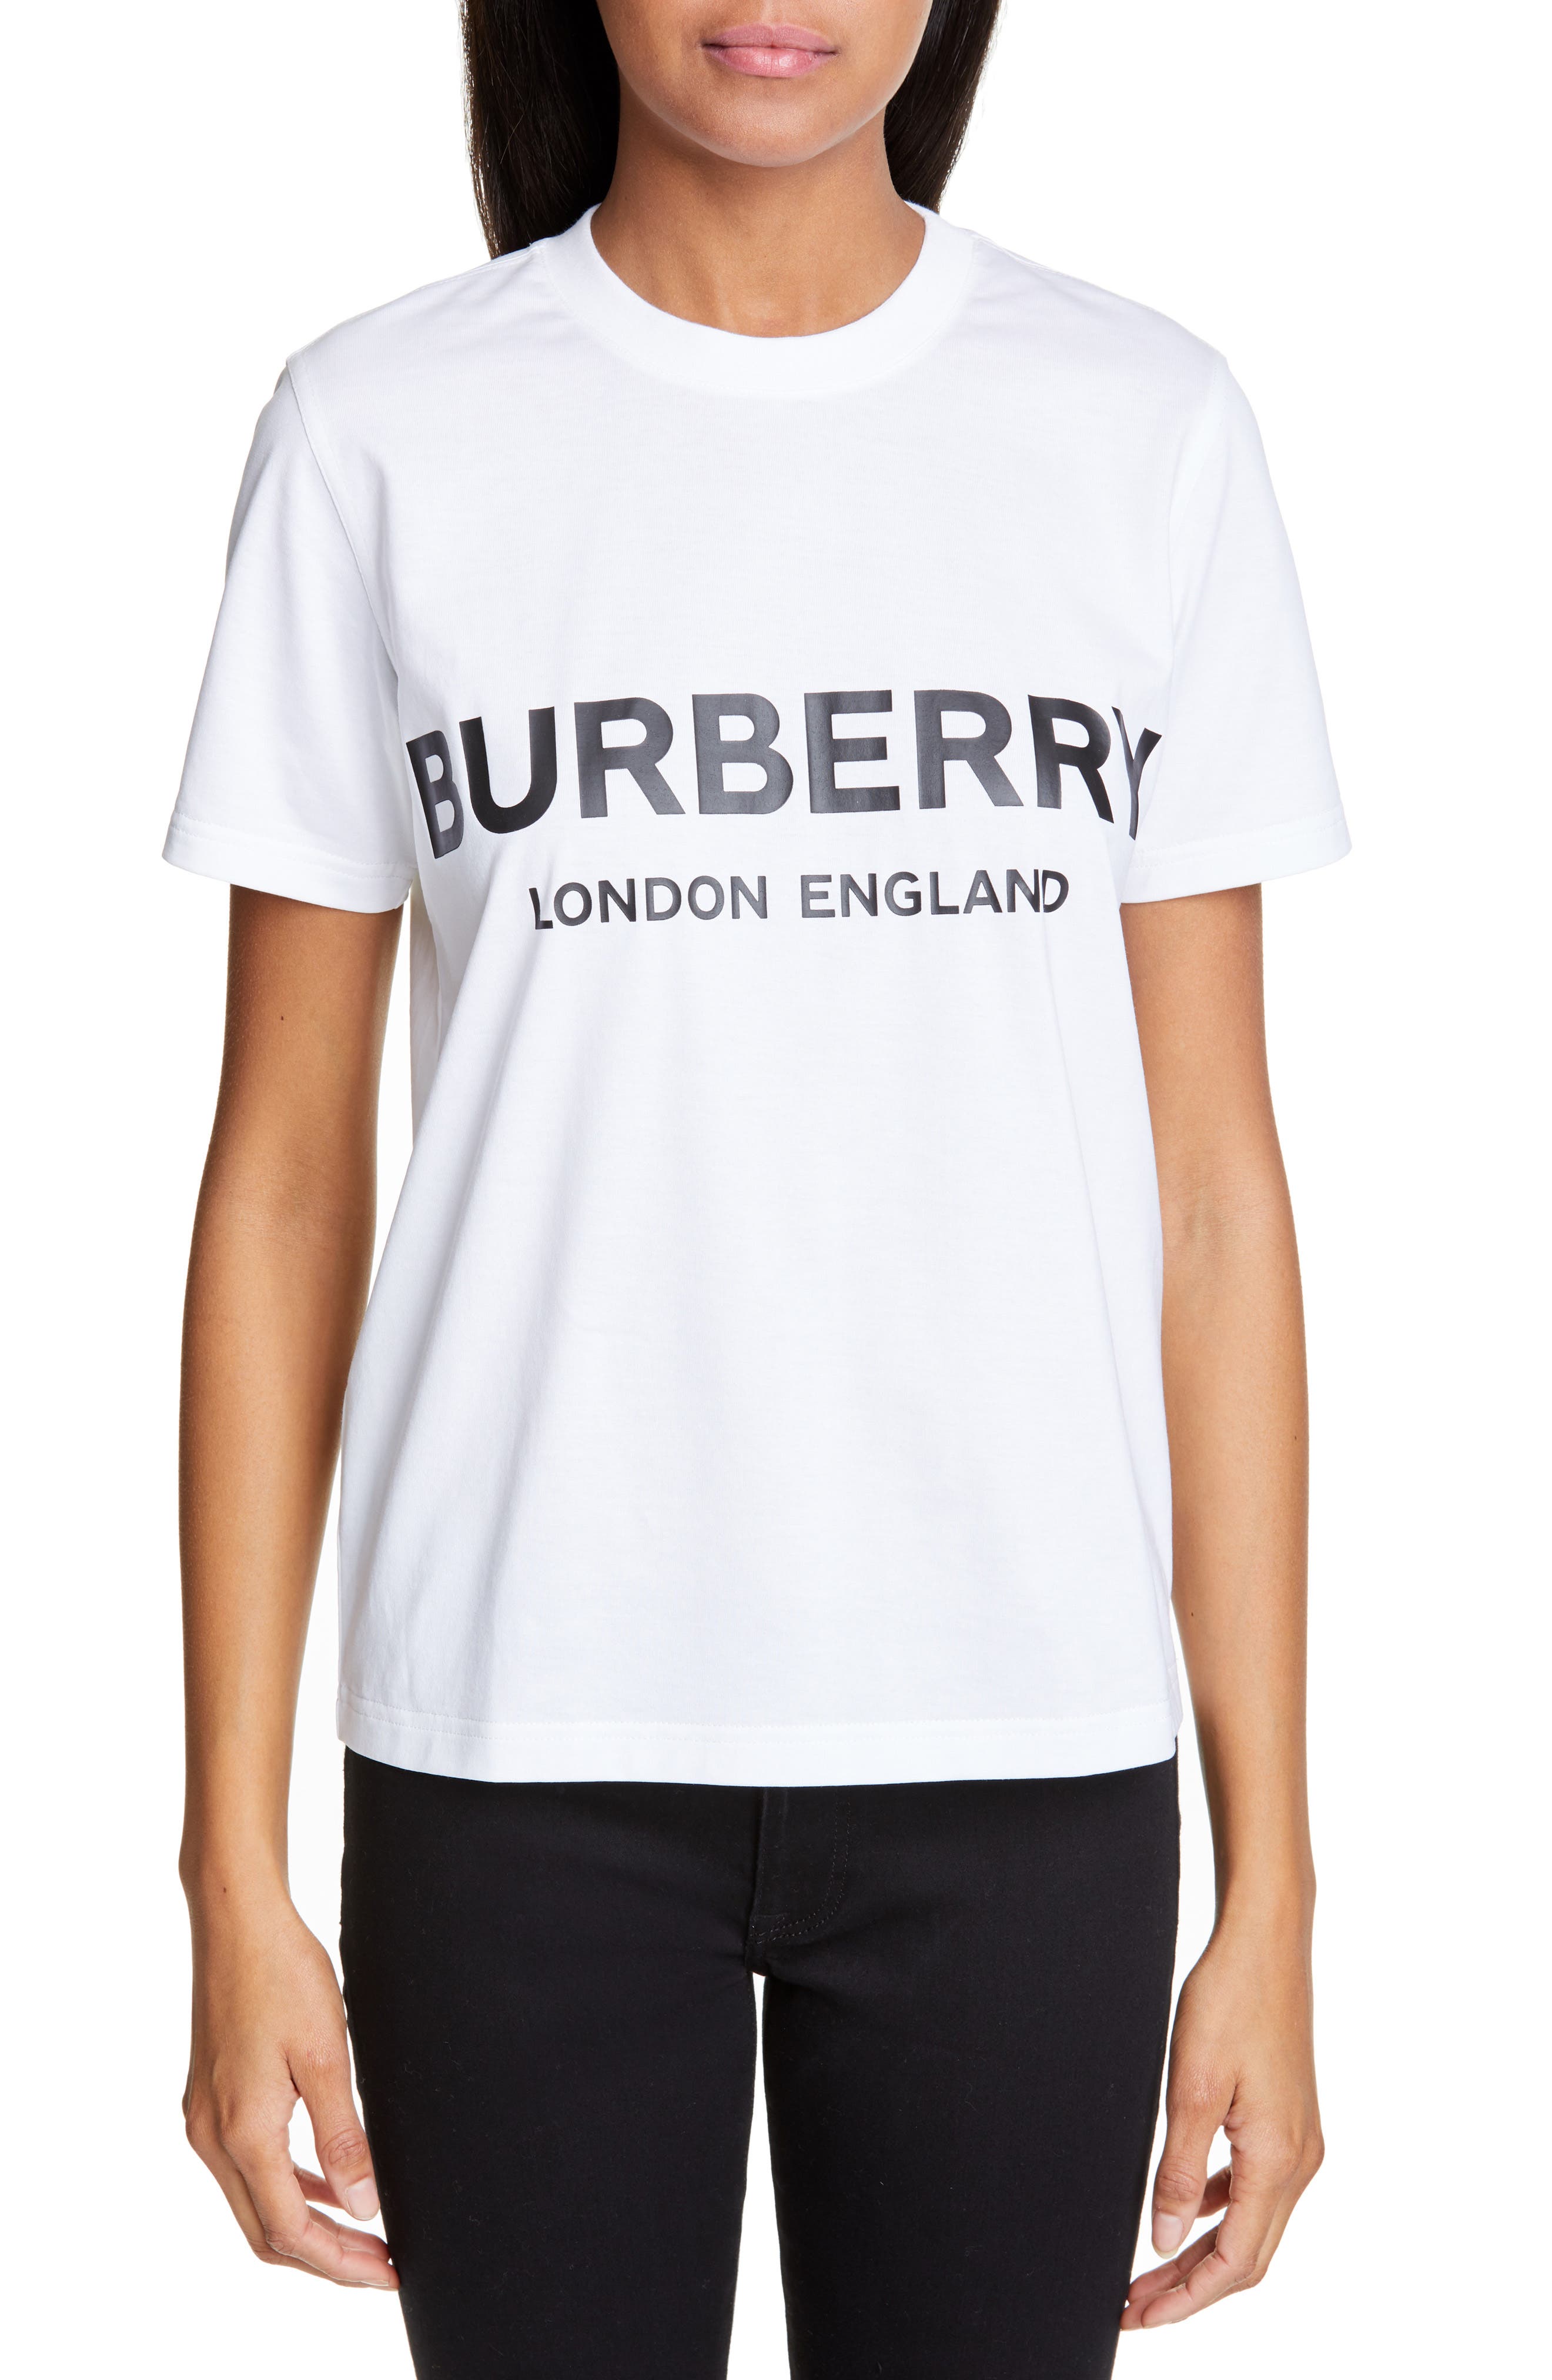 burberry womens t shirt